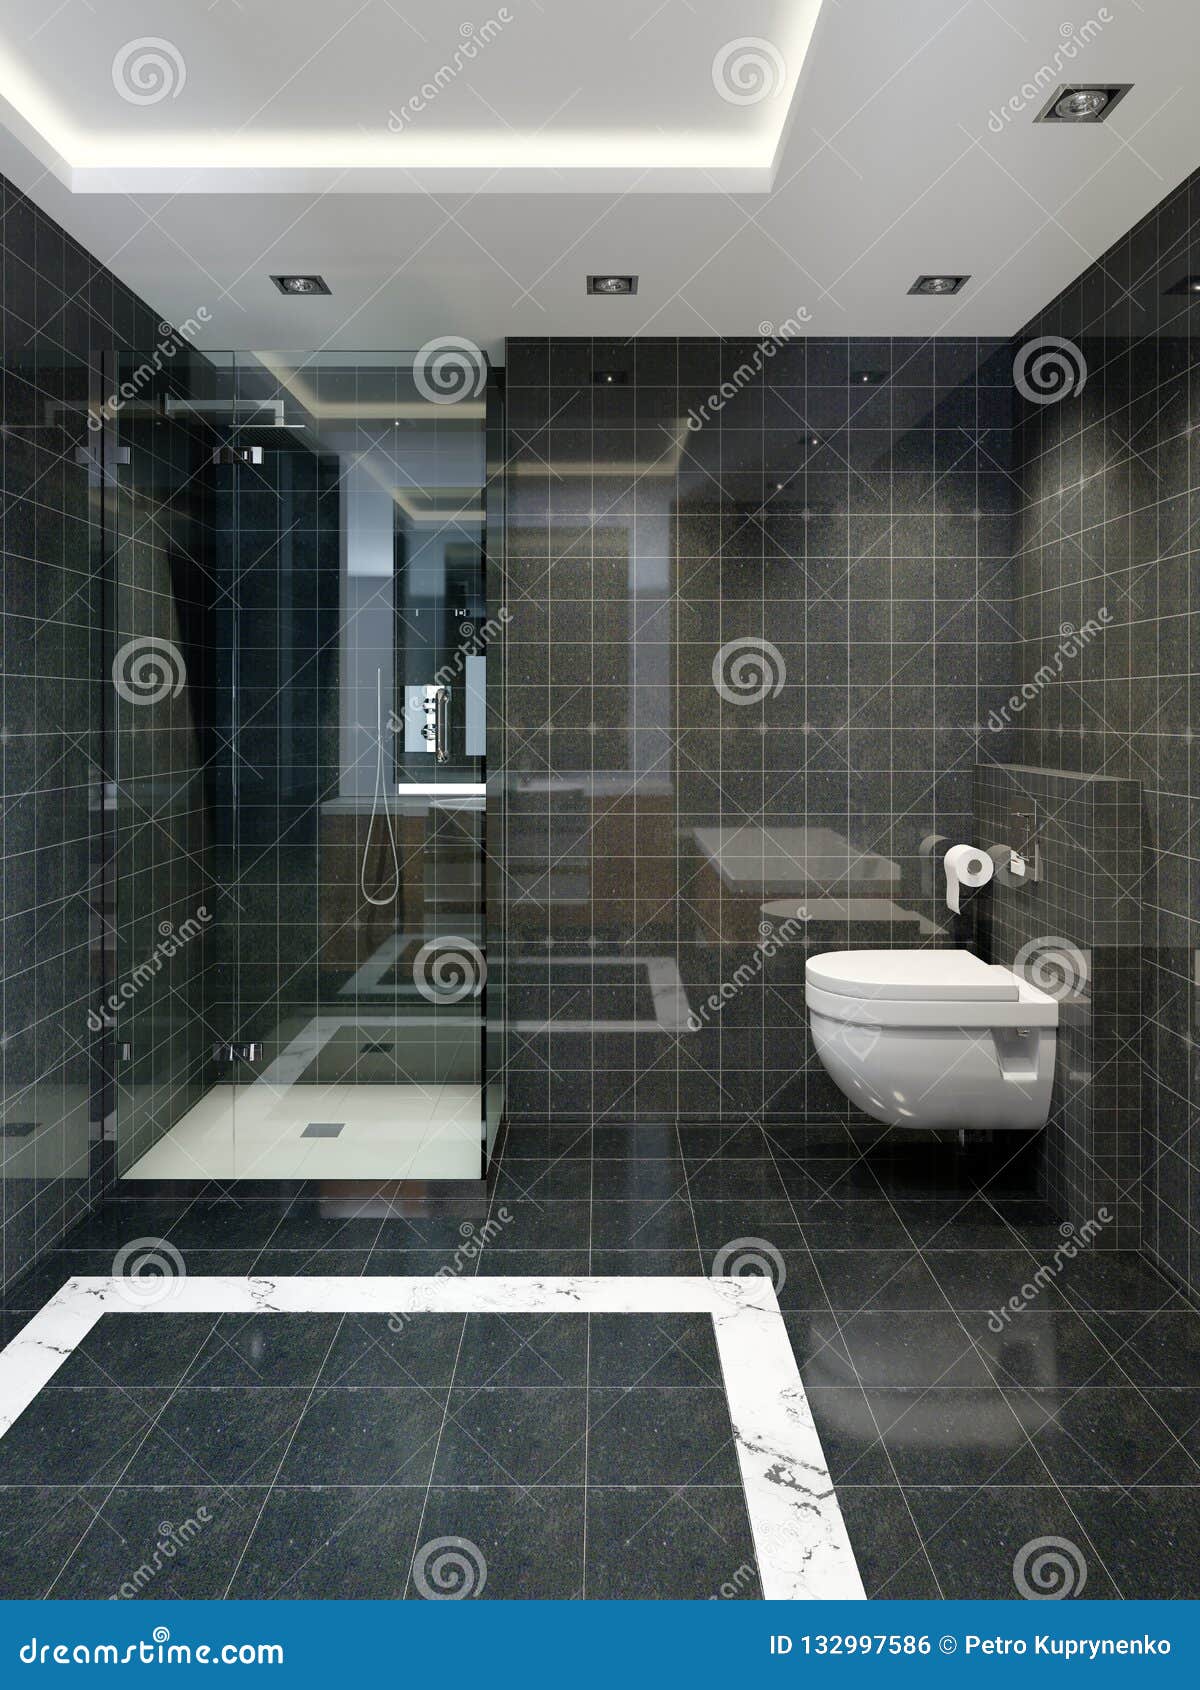 Плитка В Туалет Фото В Современном